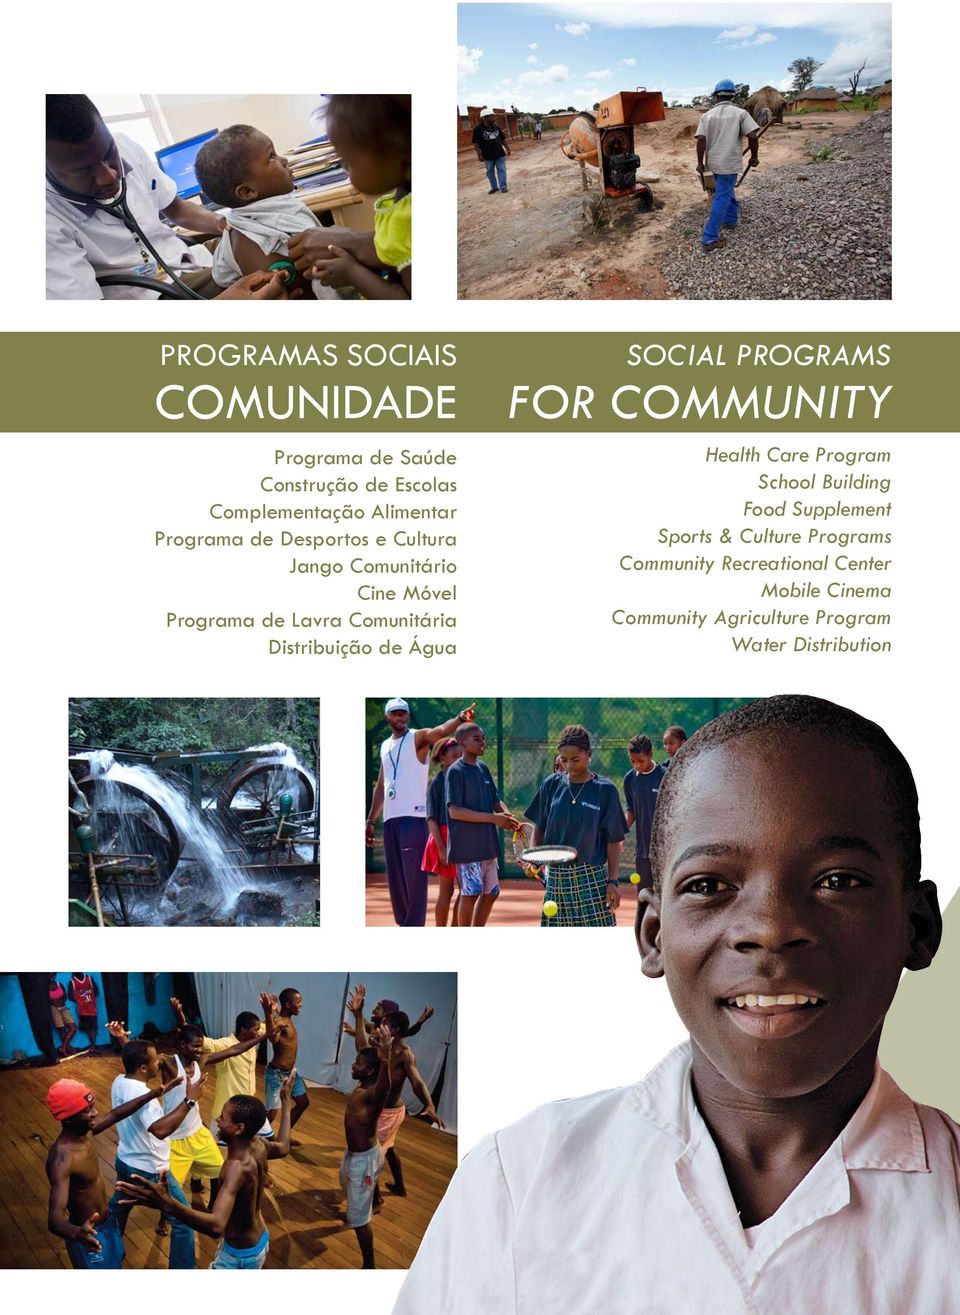 Distribuição de Água Social programs FOR COMMUNITY Health Care Program School Building Food